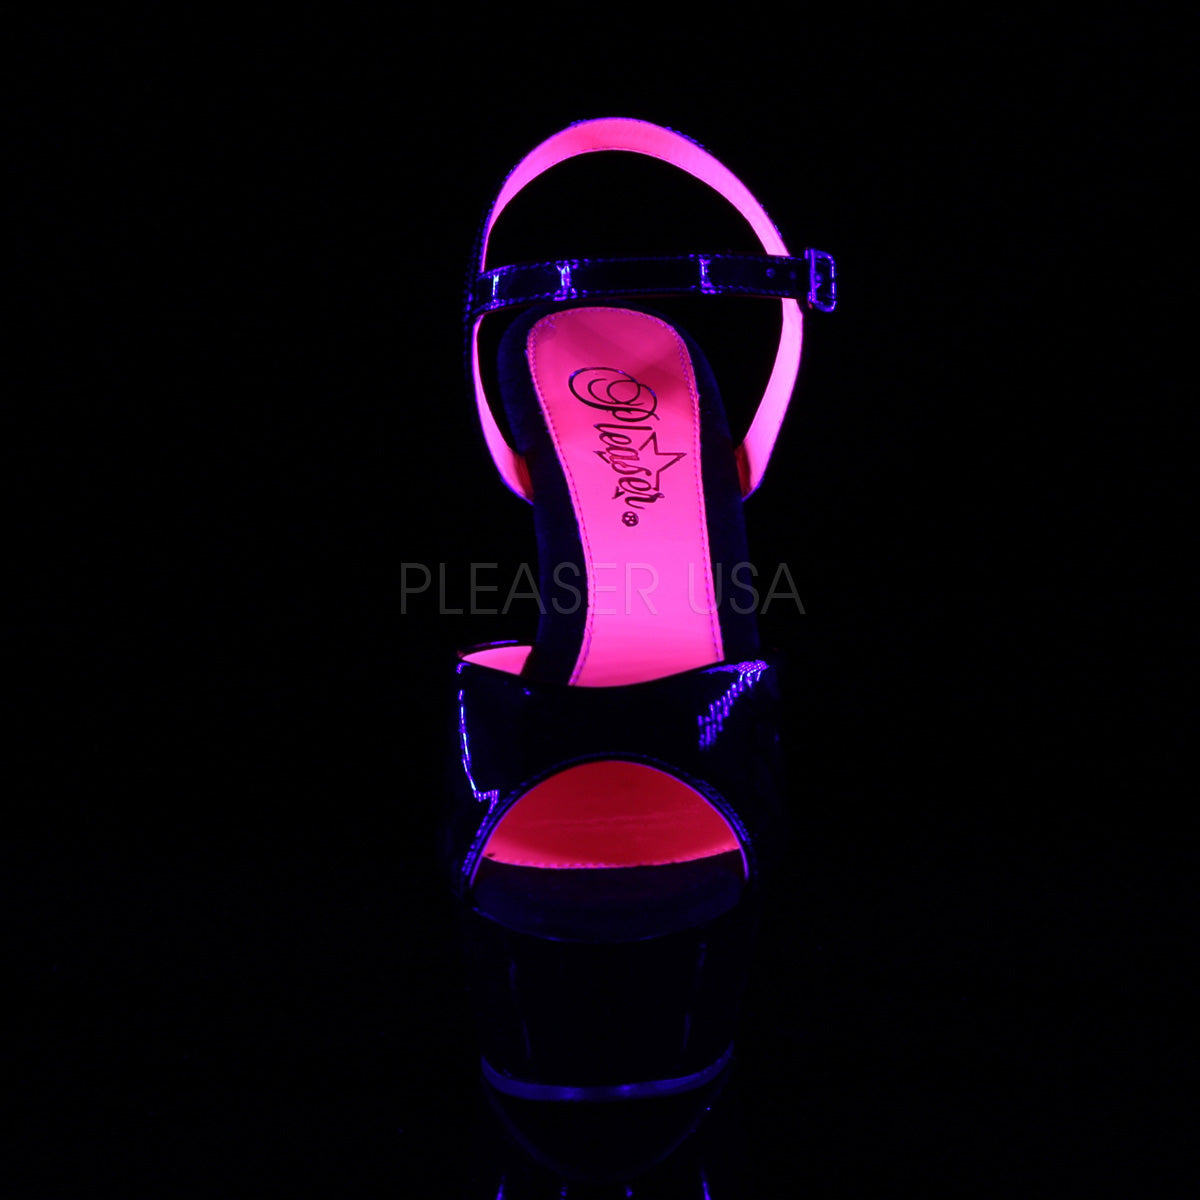 6 Inch Heel KISS-209TT Neon Hot Pink